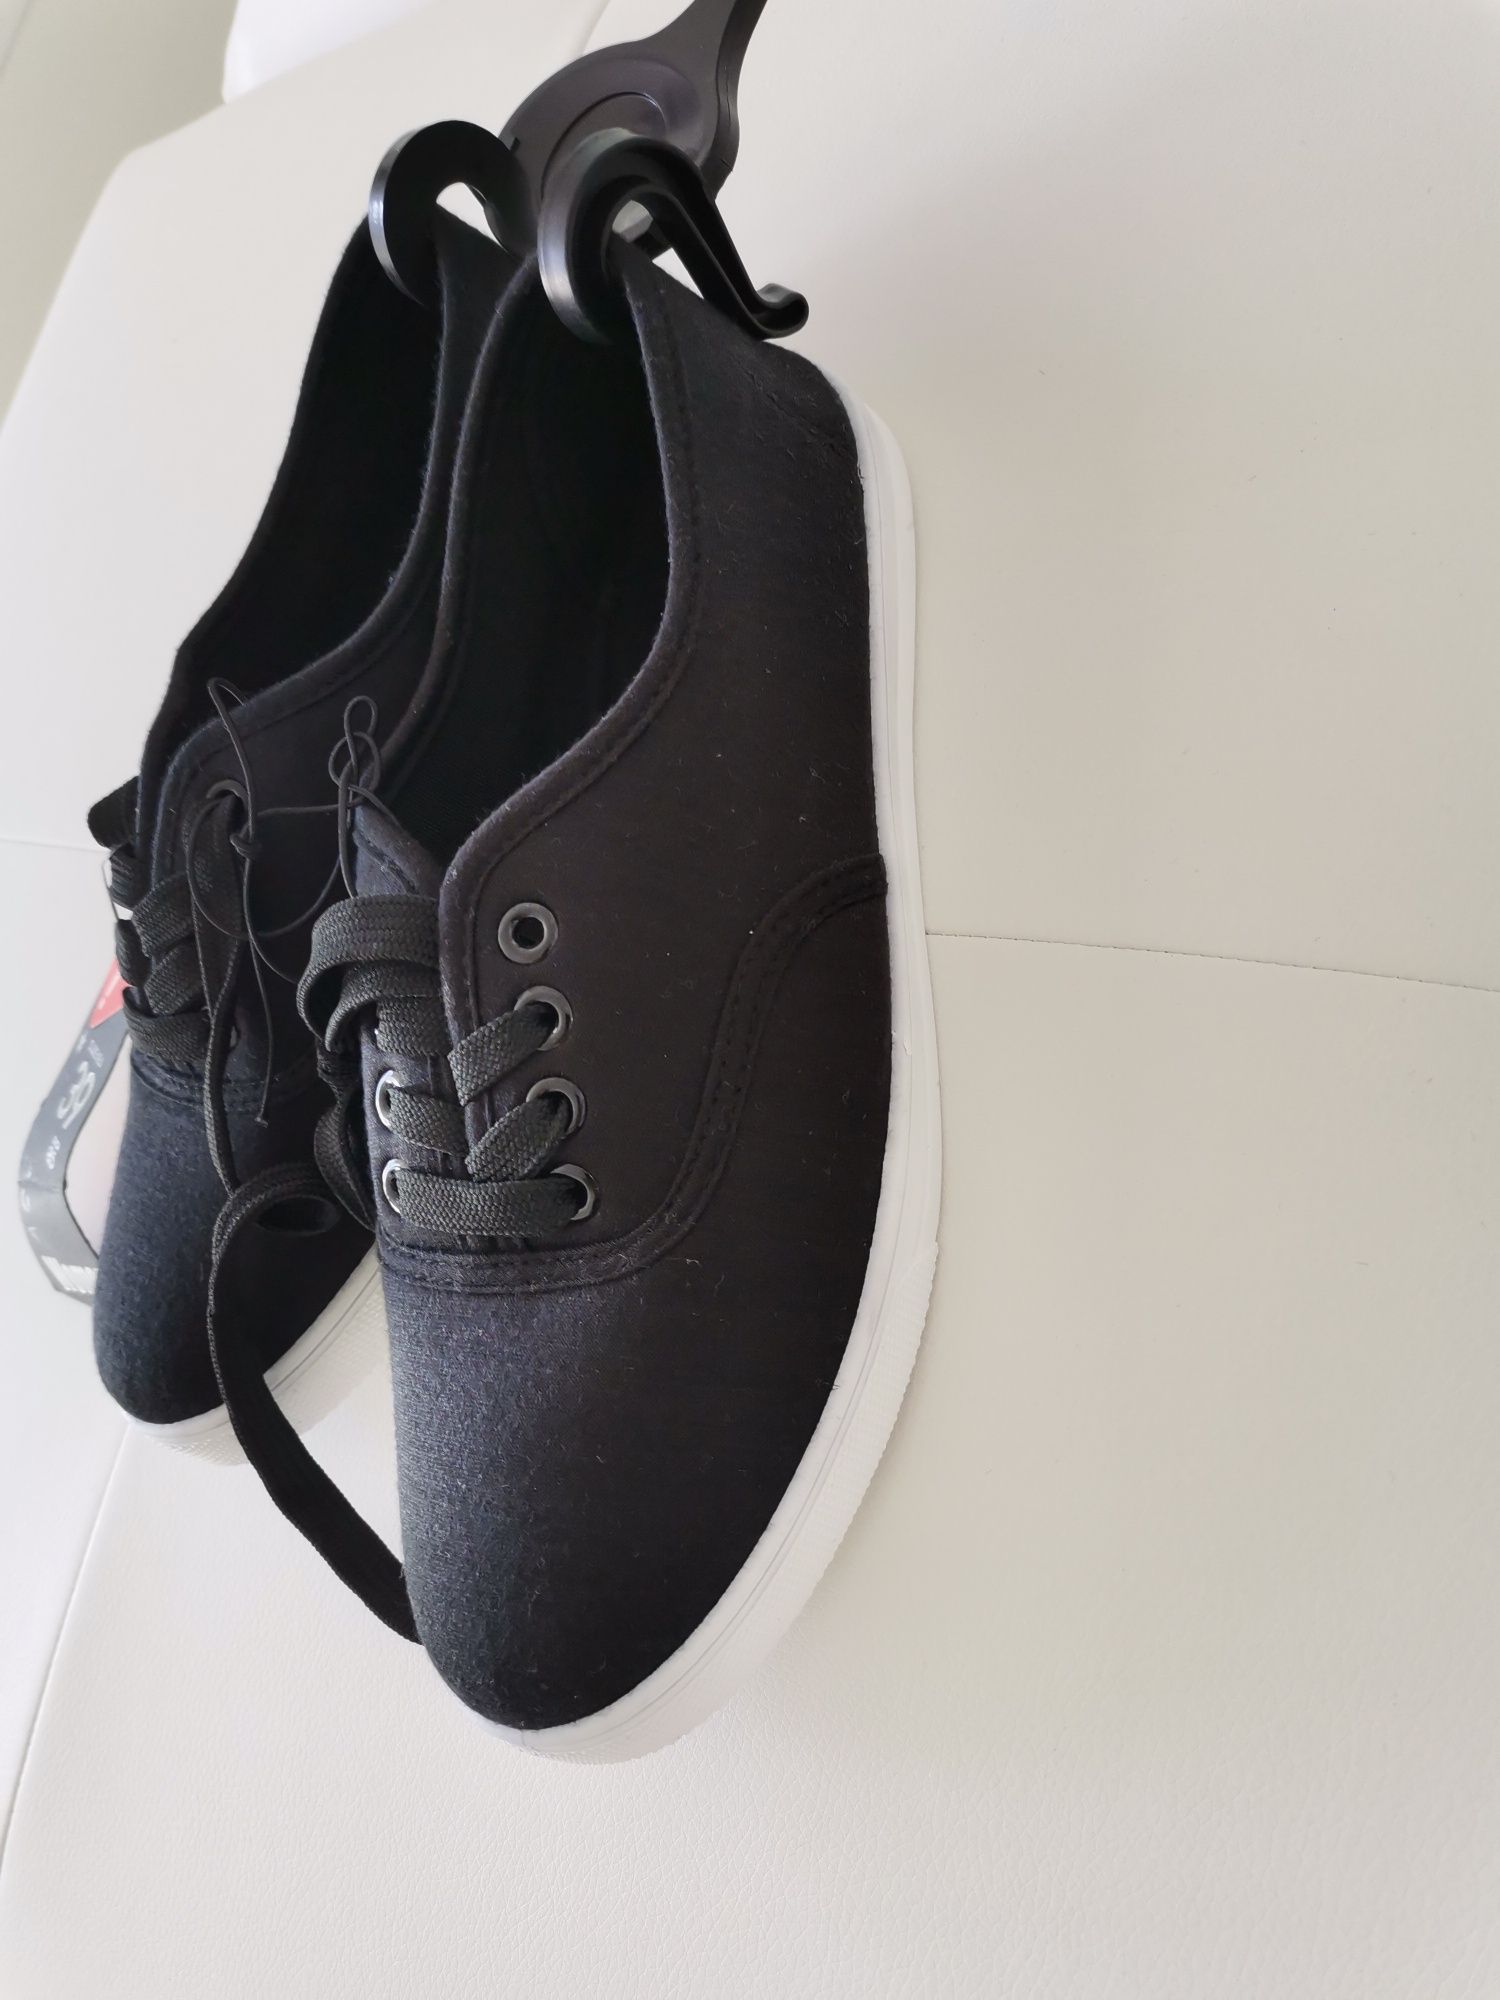 Vand pantofi sport damă, produs de calitate import Germania